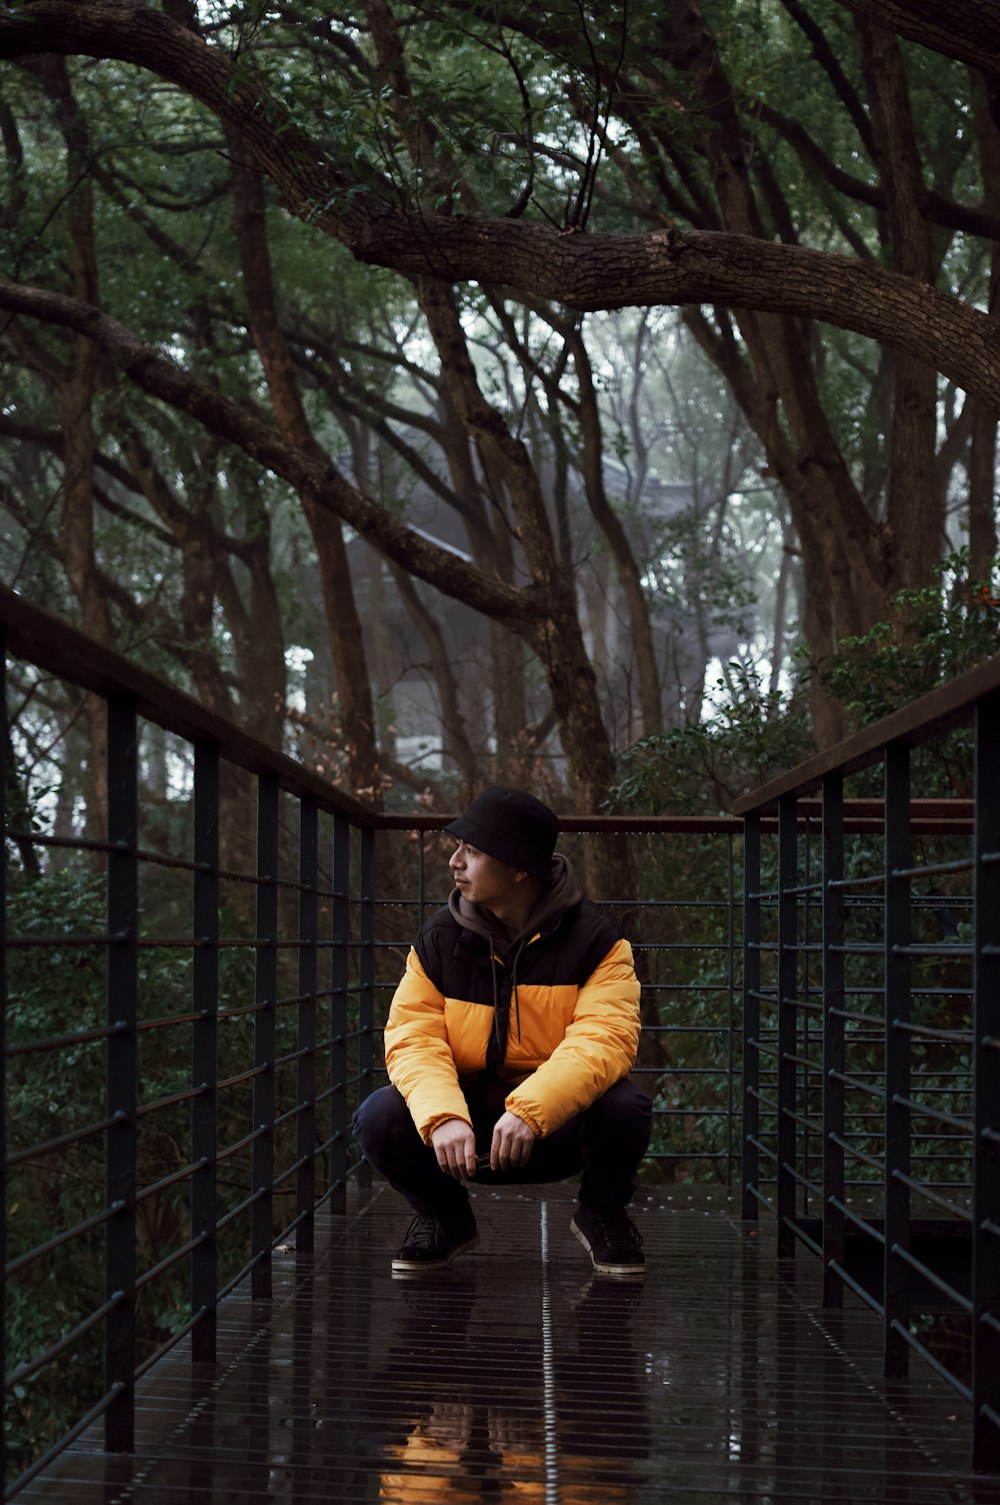 검은 색과 노란색 재킷을 입은 남자가 나무 근처에 앉아 있습니다.